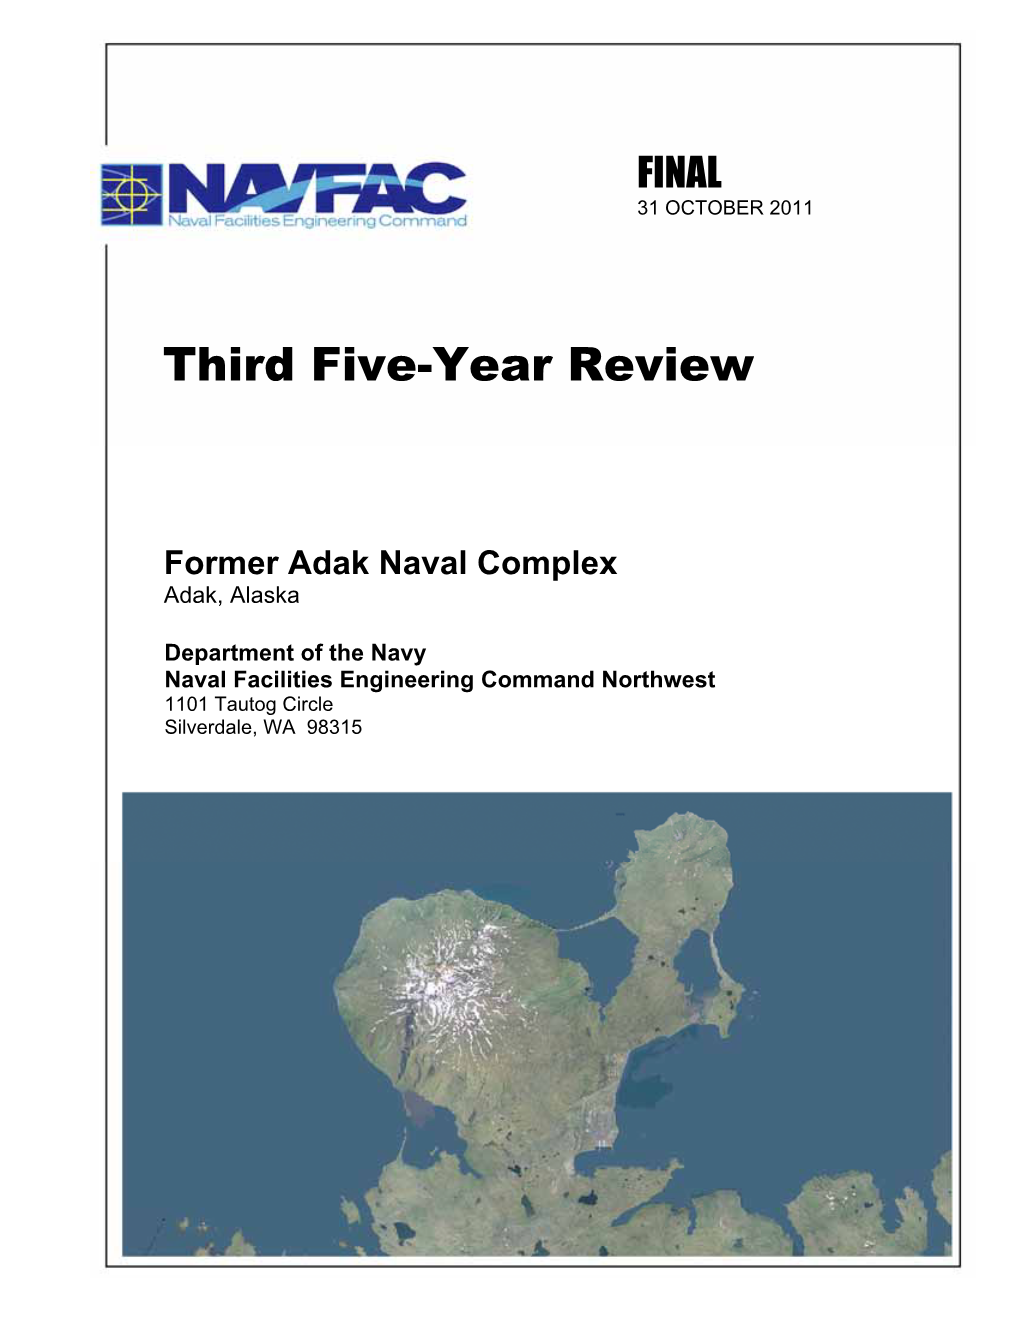 Final Third Five-Year Review, Former Adak Naval